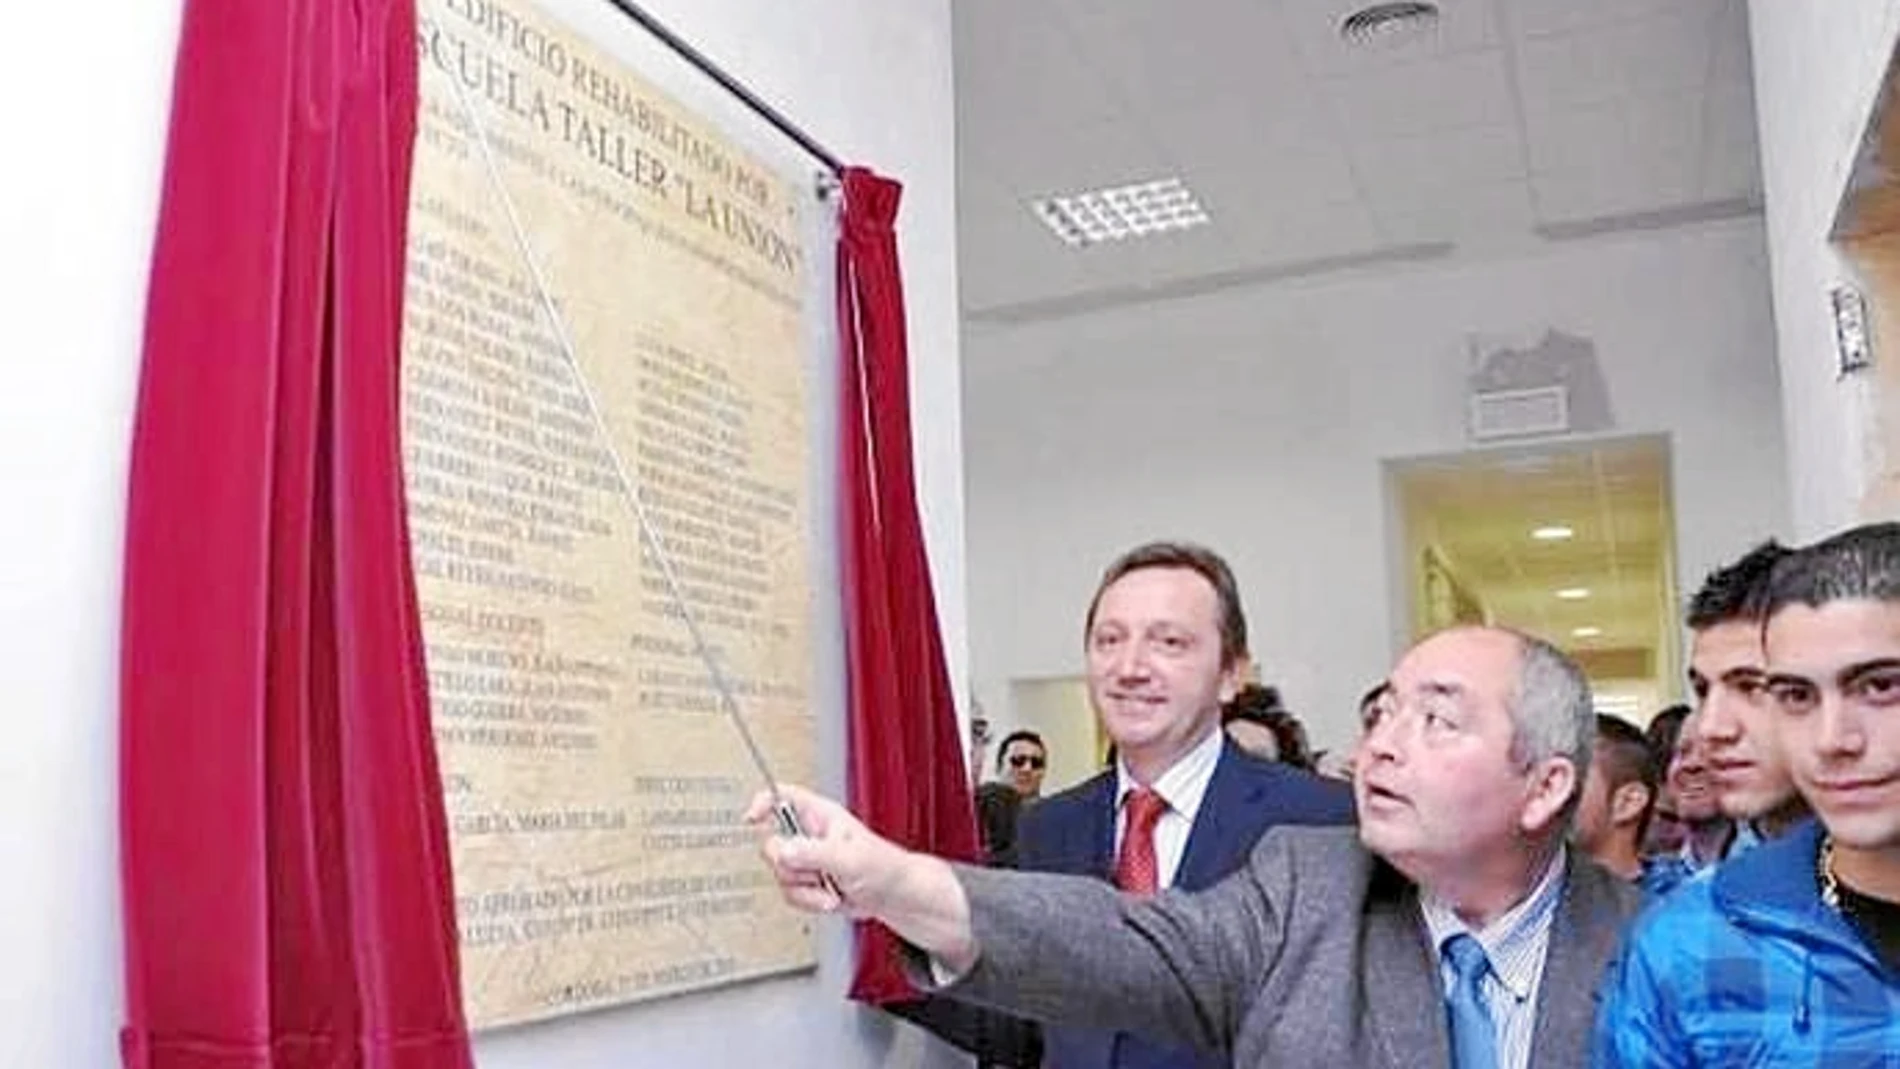 Pastrana inauguró la sede junto al ex consejero Manuel Recio el 29 de marzo de 2010